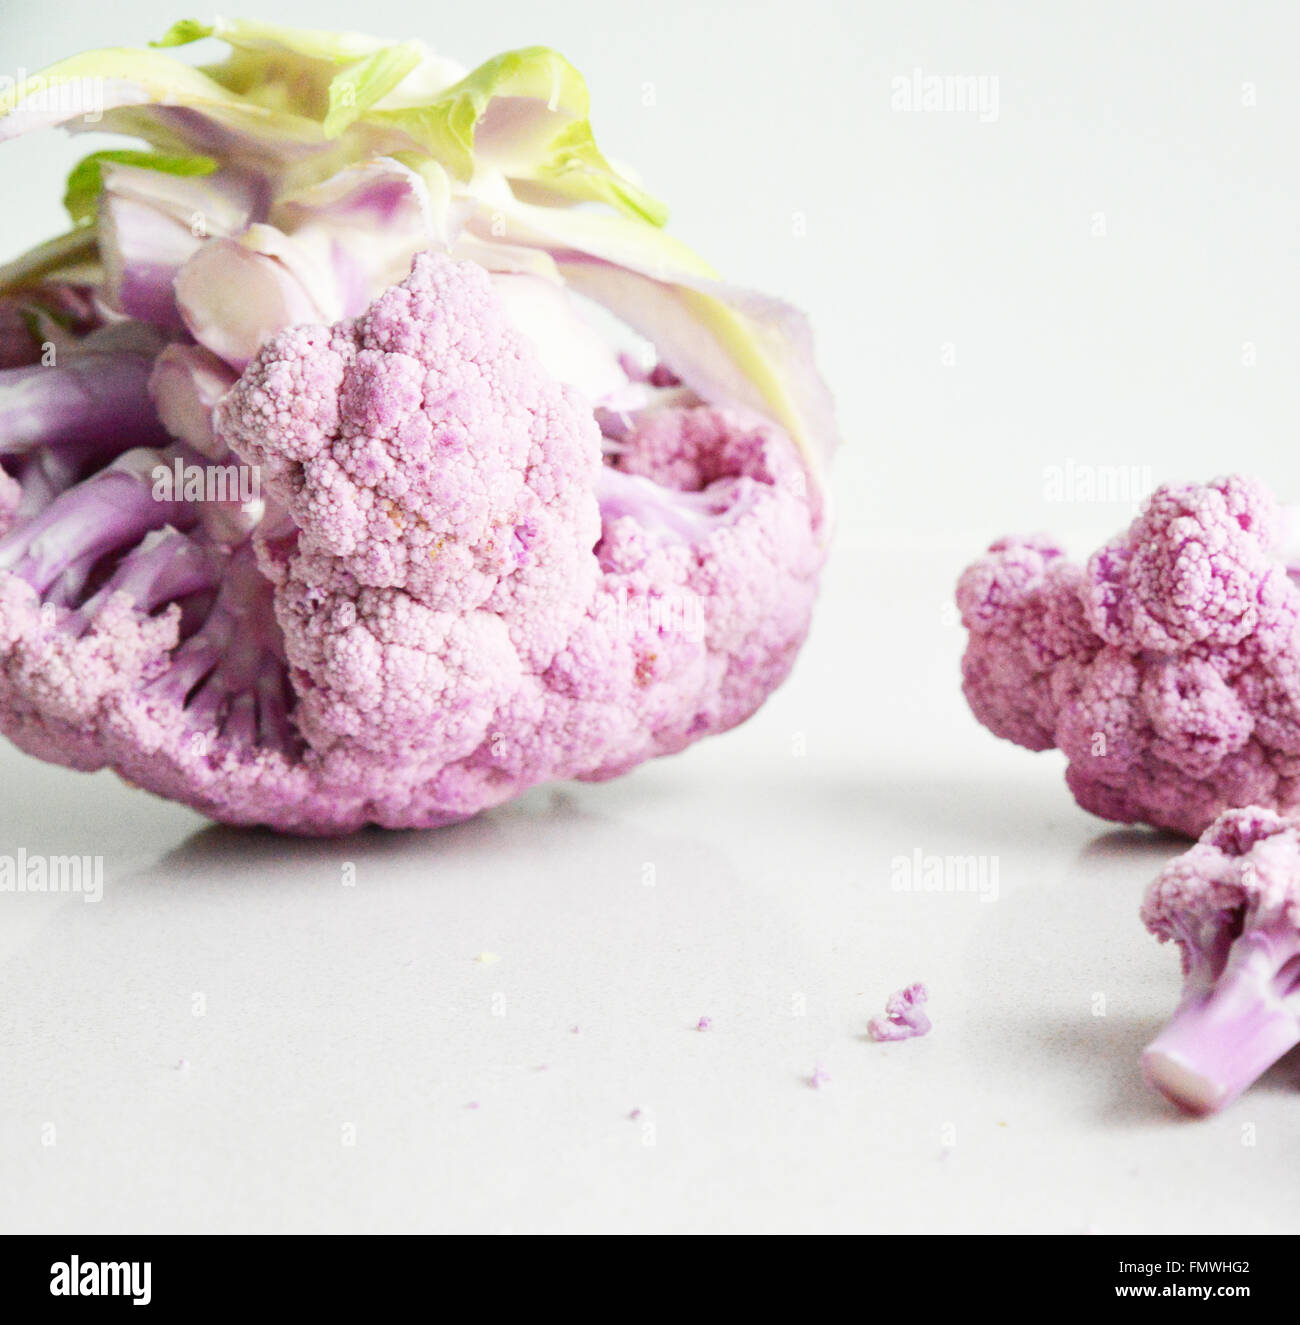 Cauliflower. Stock Photo